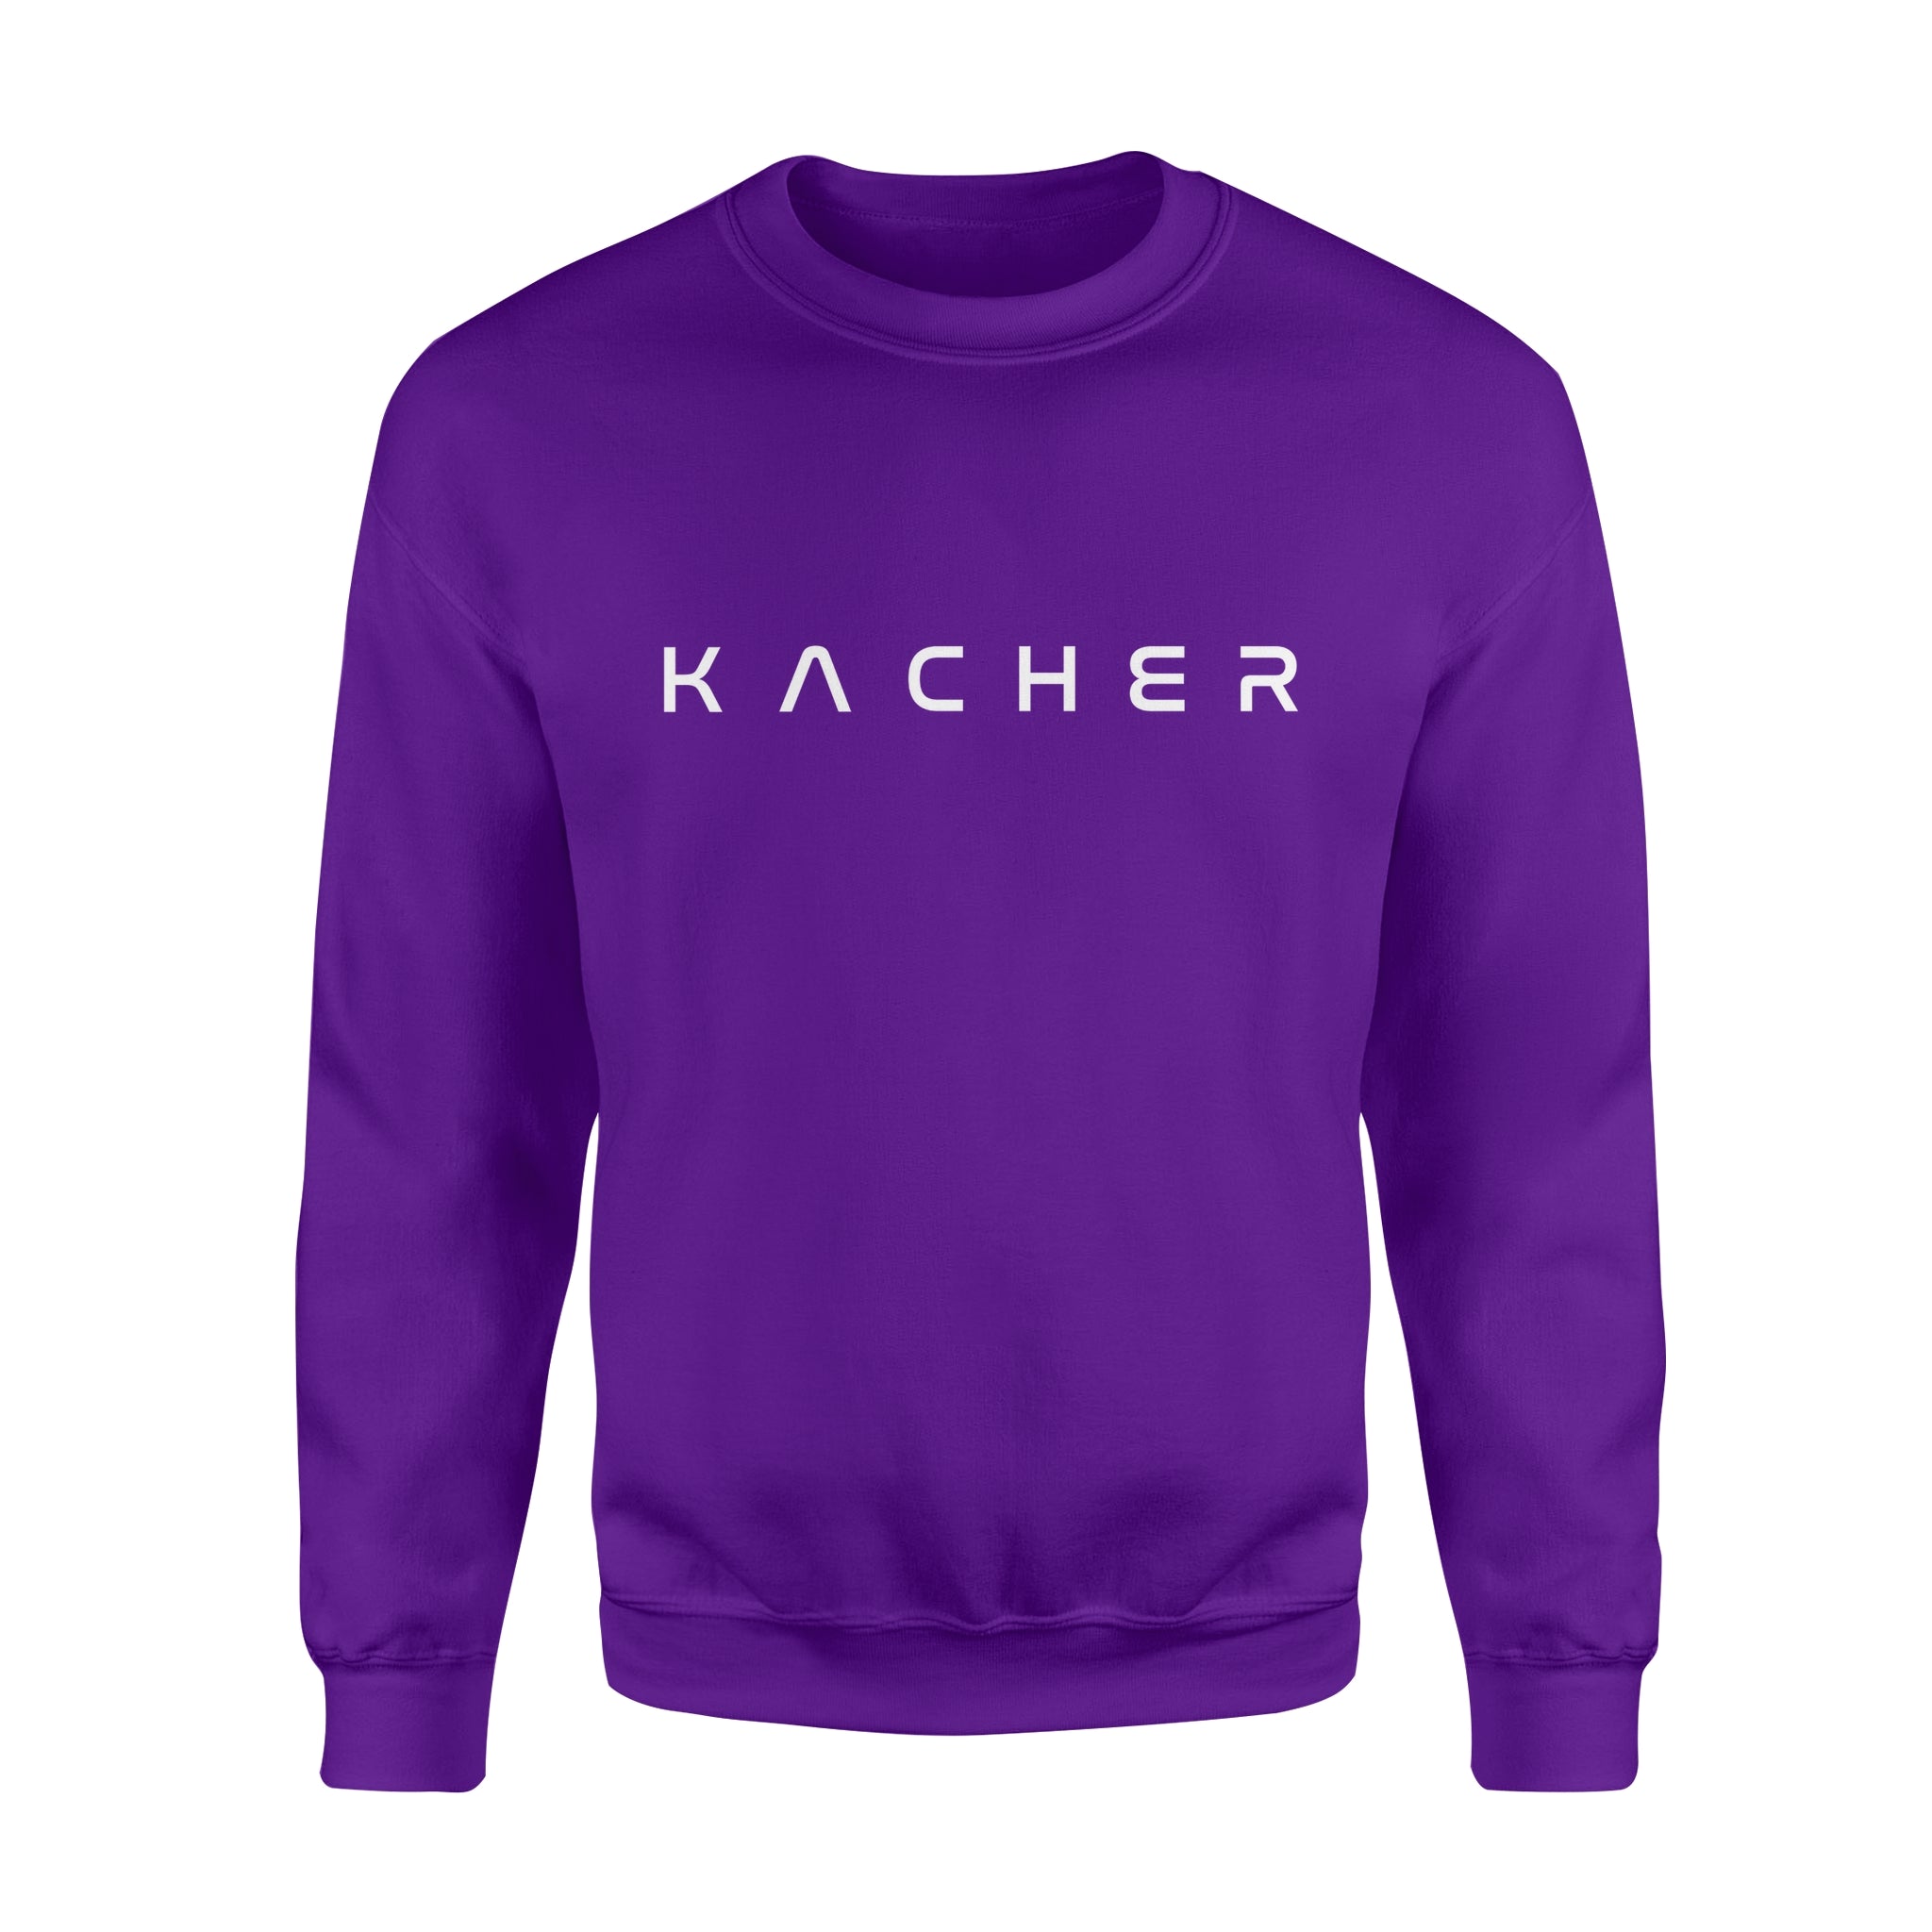 KACHER - Fleece Sweatshirt